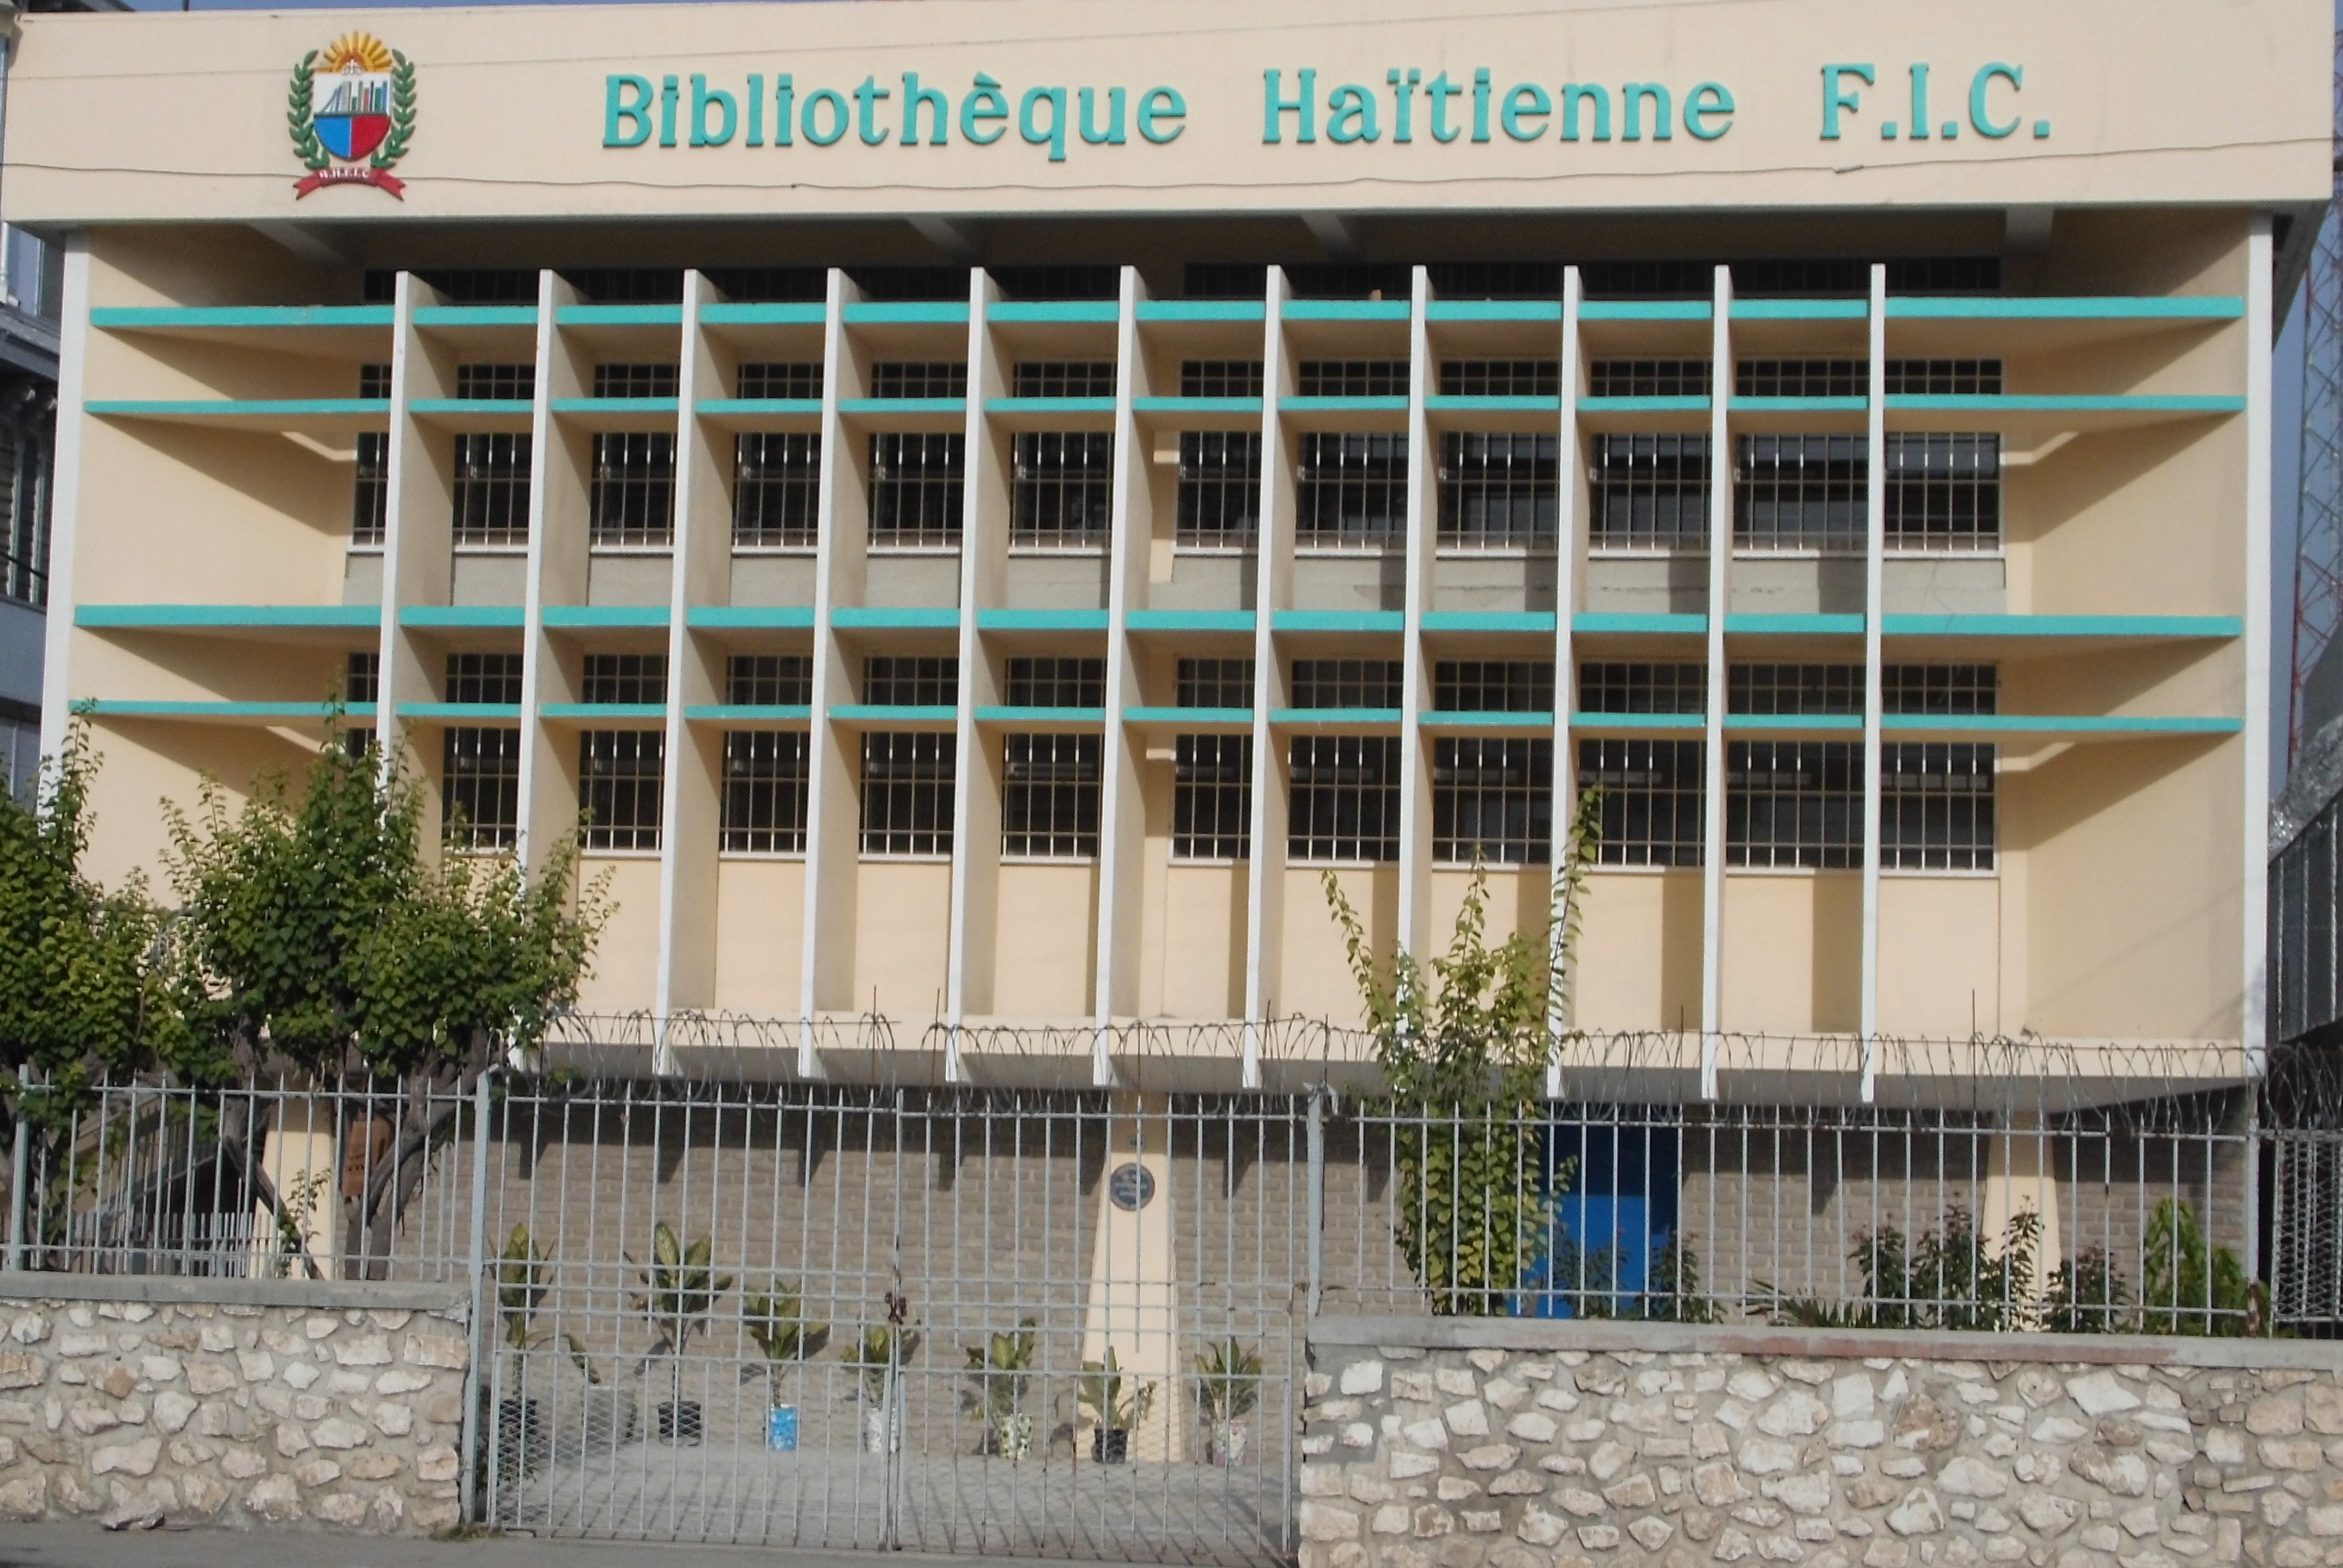 The Bibliothèque Haïtienne des Frères de l'Instruction Chrétienne newspaper collection